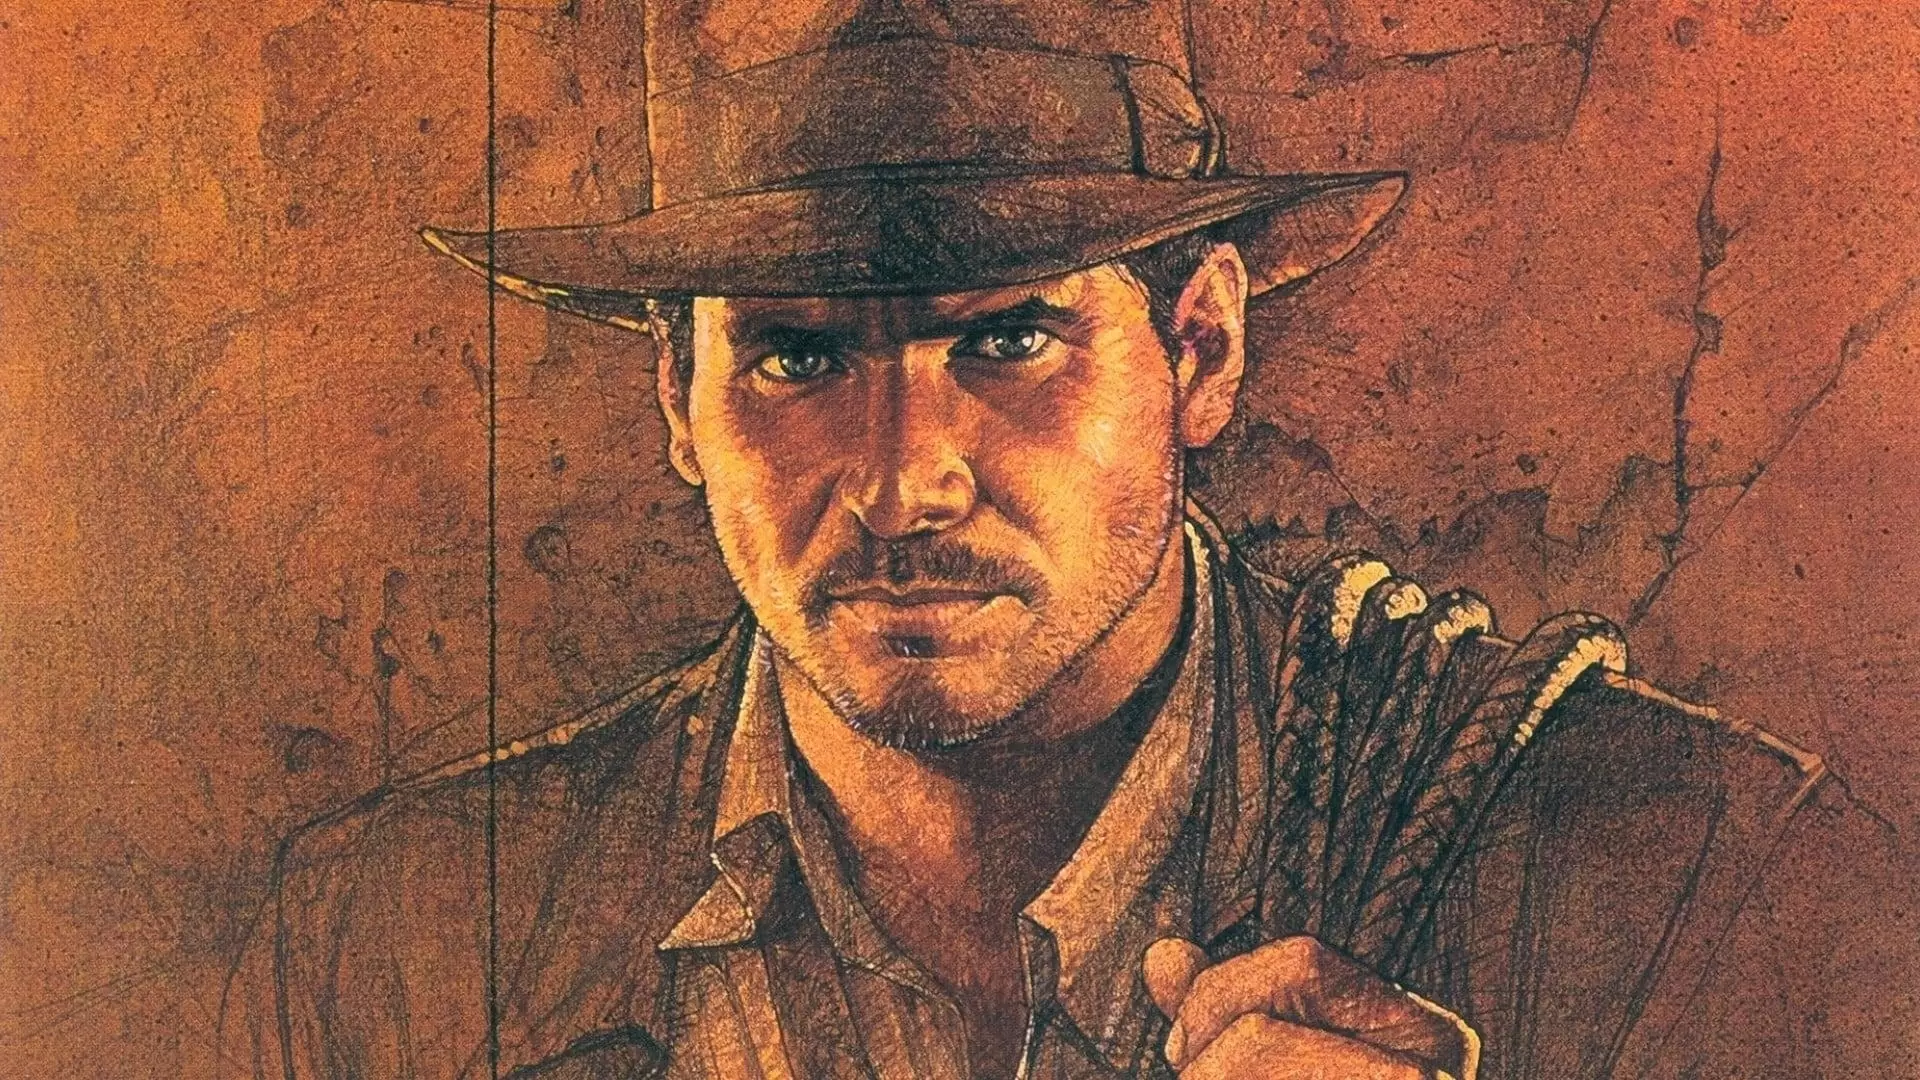 دانلود فیلم Indiana Jones: Raiders of the Lost Ark 1981 (ایندیانا جونز: مهاجمان صندوق گمشده) با زیرنویس فارسی و تماشای آنلاین